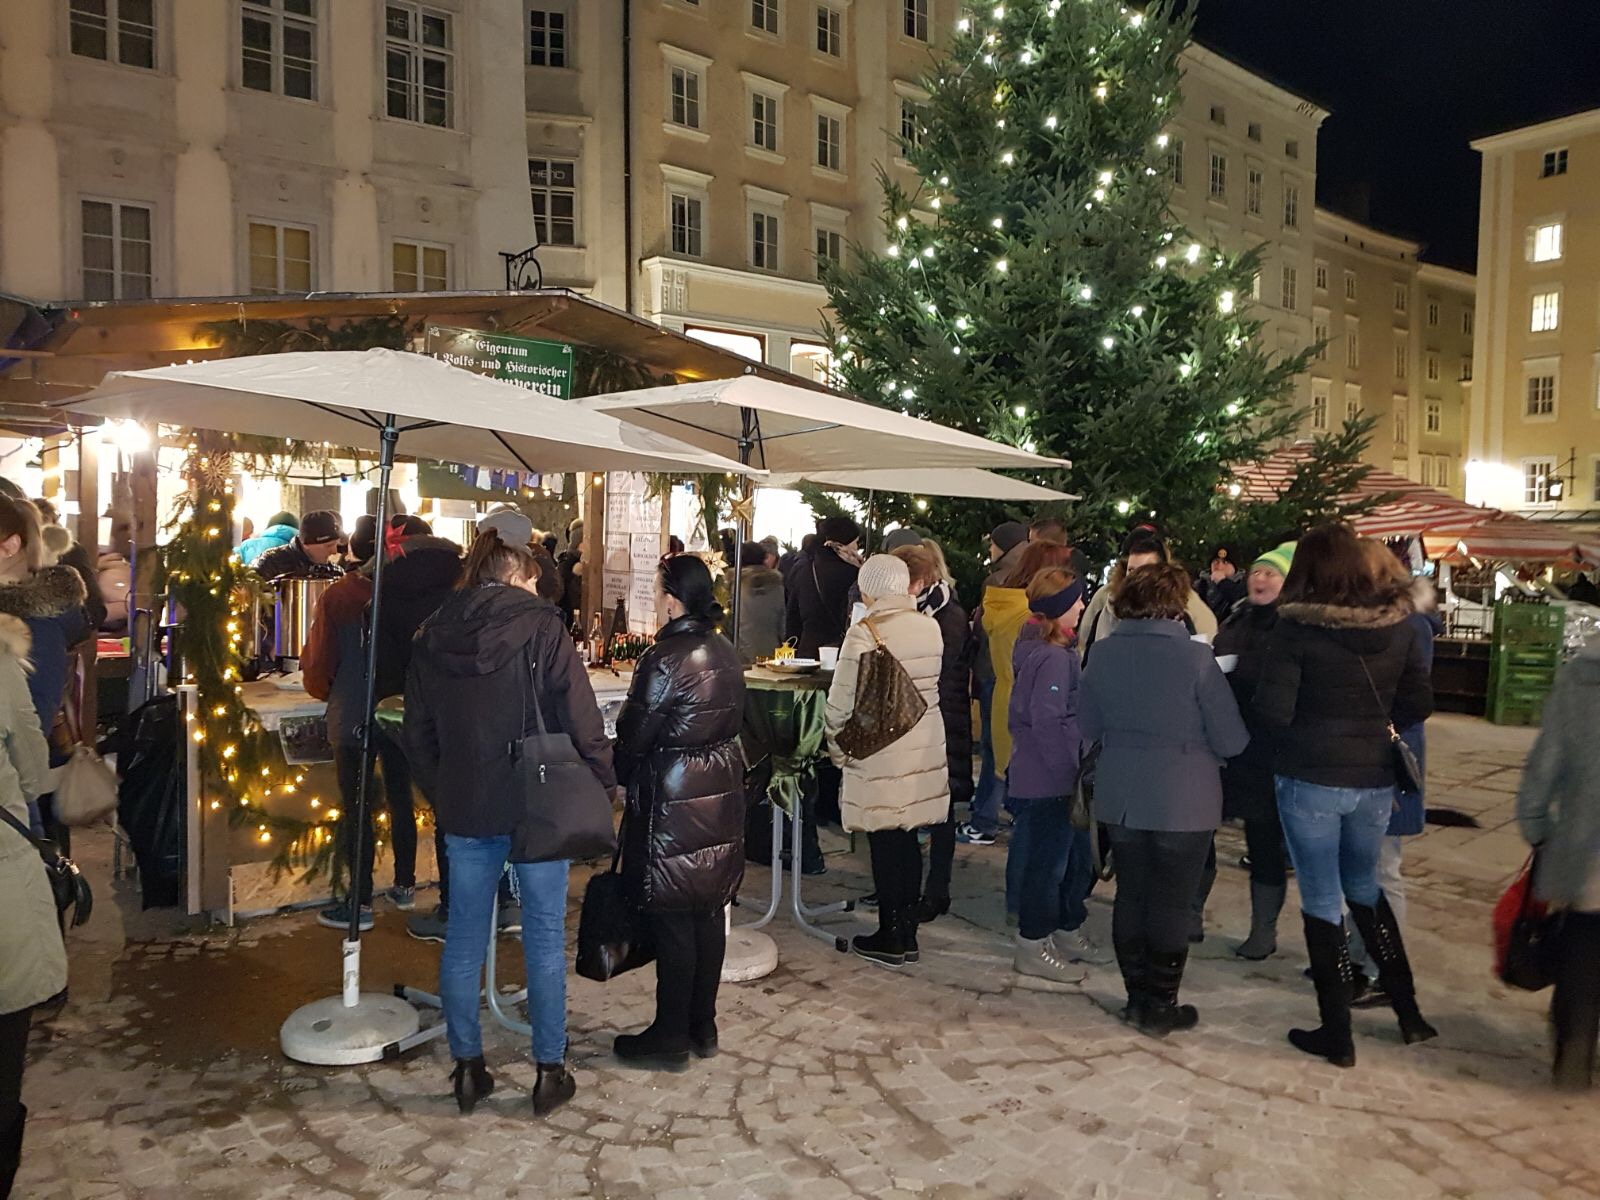 Glühweinstand am Alten Markt 2017